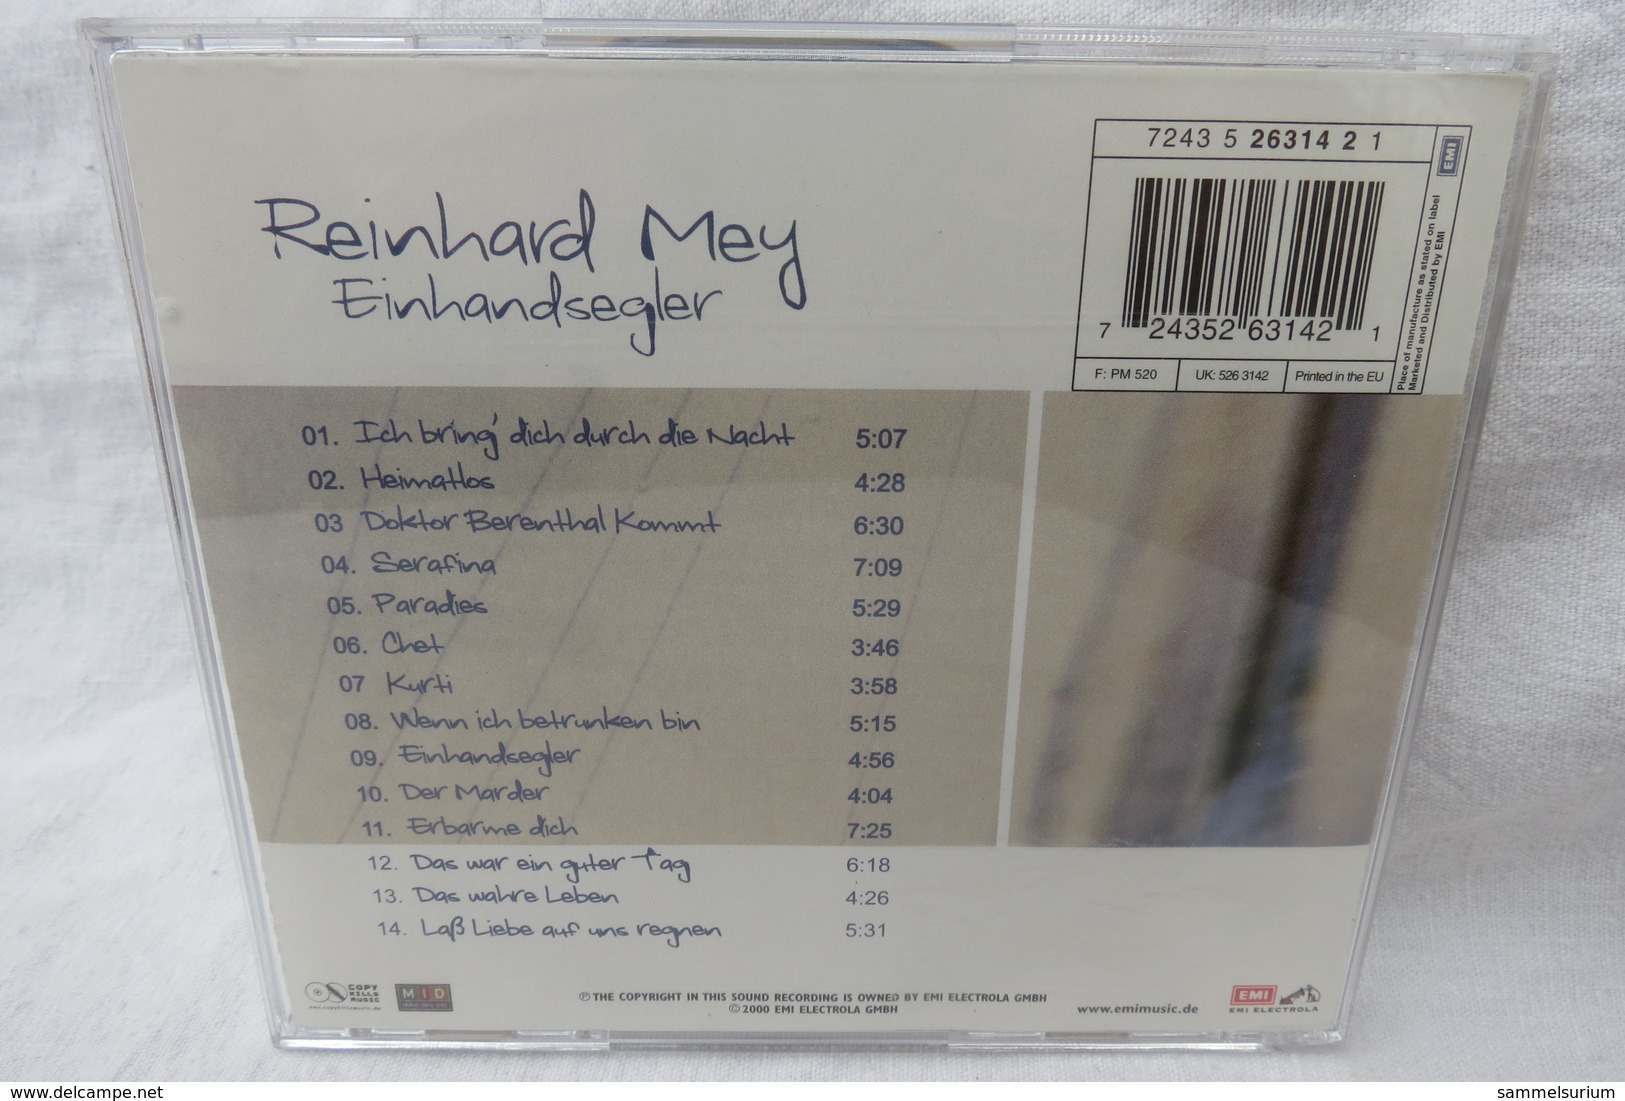 CD "Reinhard Mey" Einhandsegler - Sonstige - Deutsche Musik